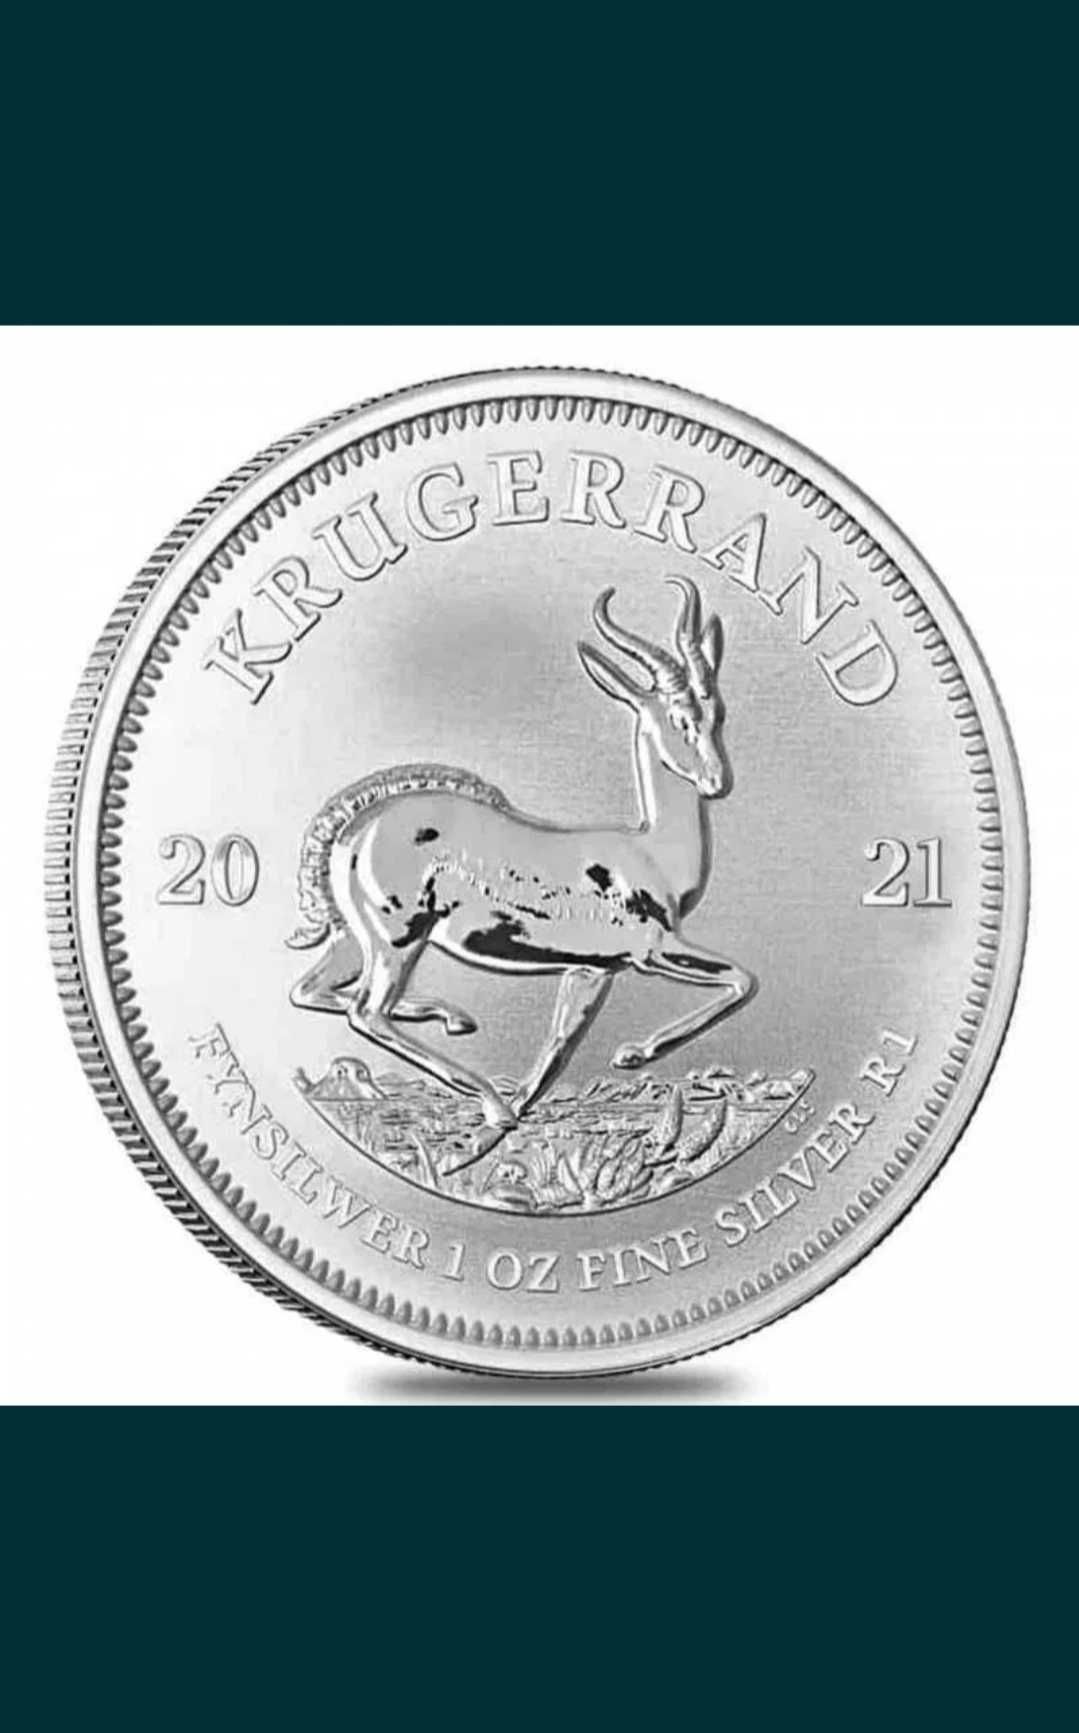 Monede argint 1 uncie (31,1 gr)